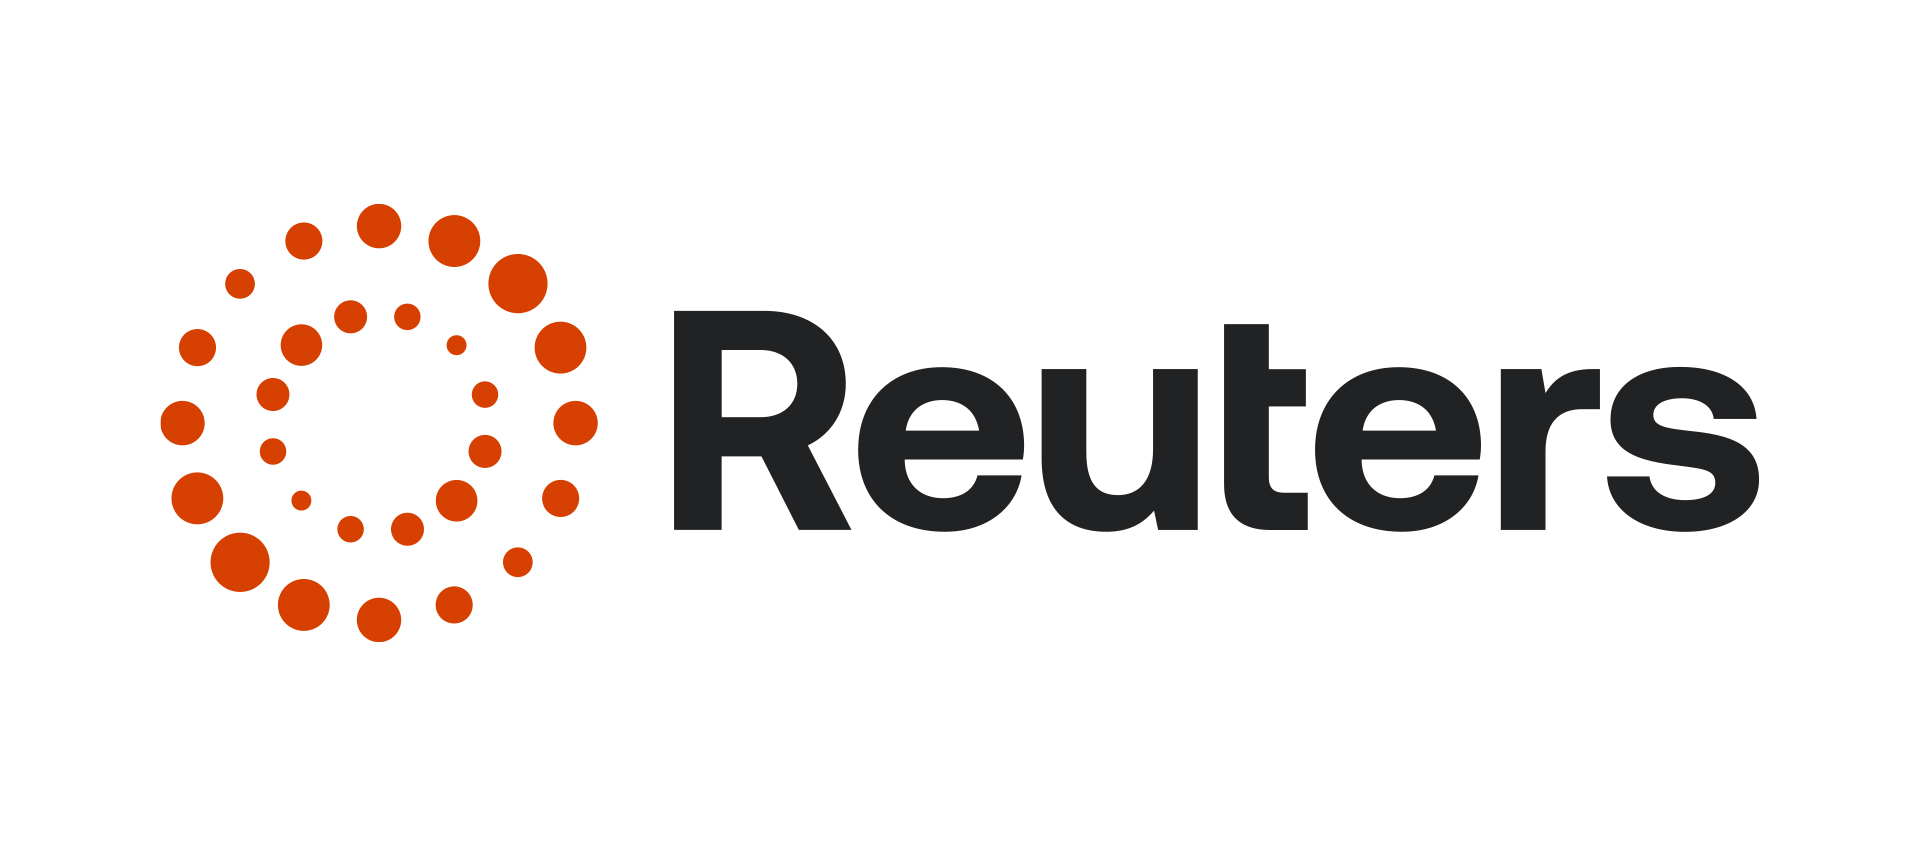 New Reuters logo